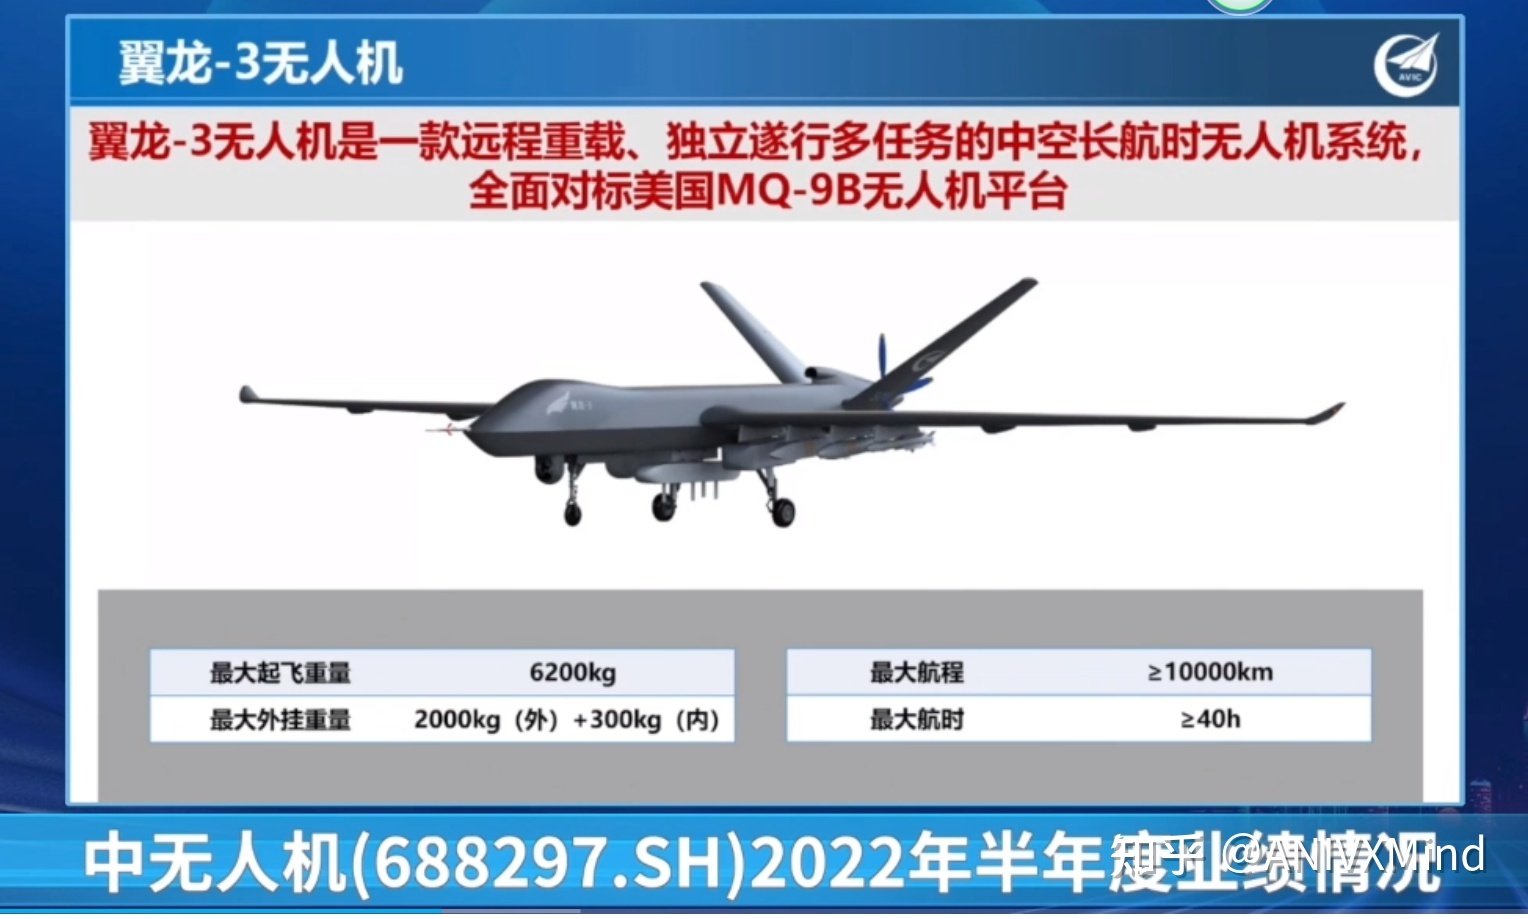 Китай презентував ударно-розвідувальний дрон Wing Loong 3 - конкурент для MQ-9B SkyGuardian із дальністю польоту 10 000 км та ракетами PL-10-2